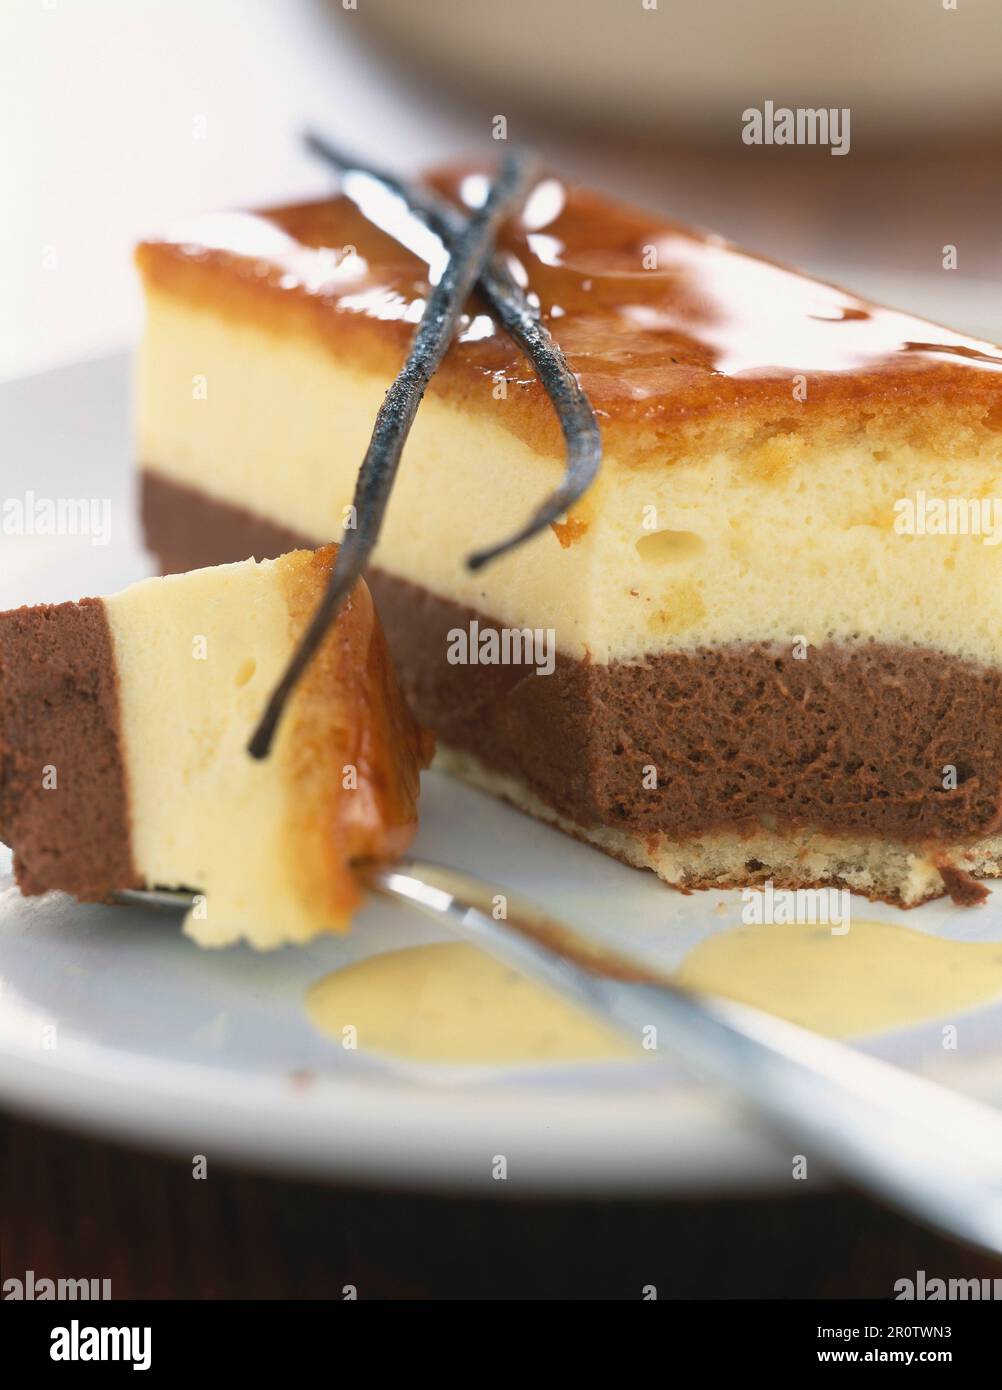 Chocolate and vanilla Bavarian cream dessert Stock Photo